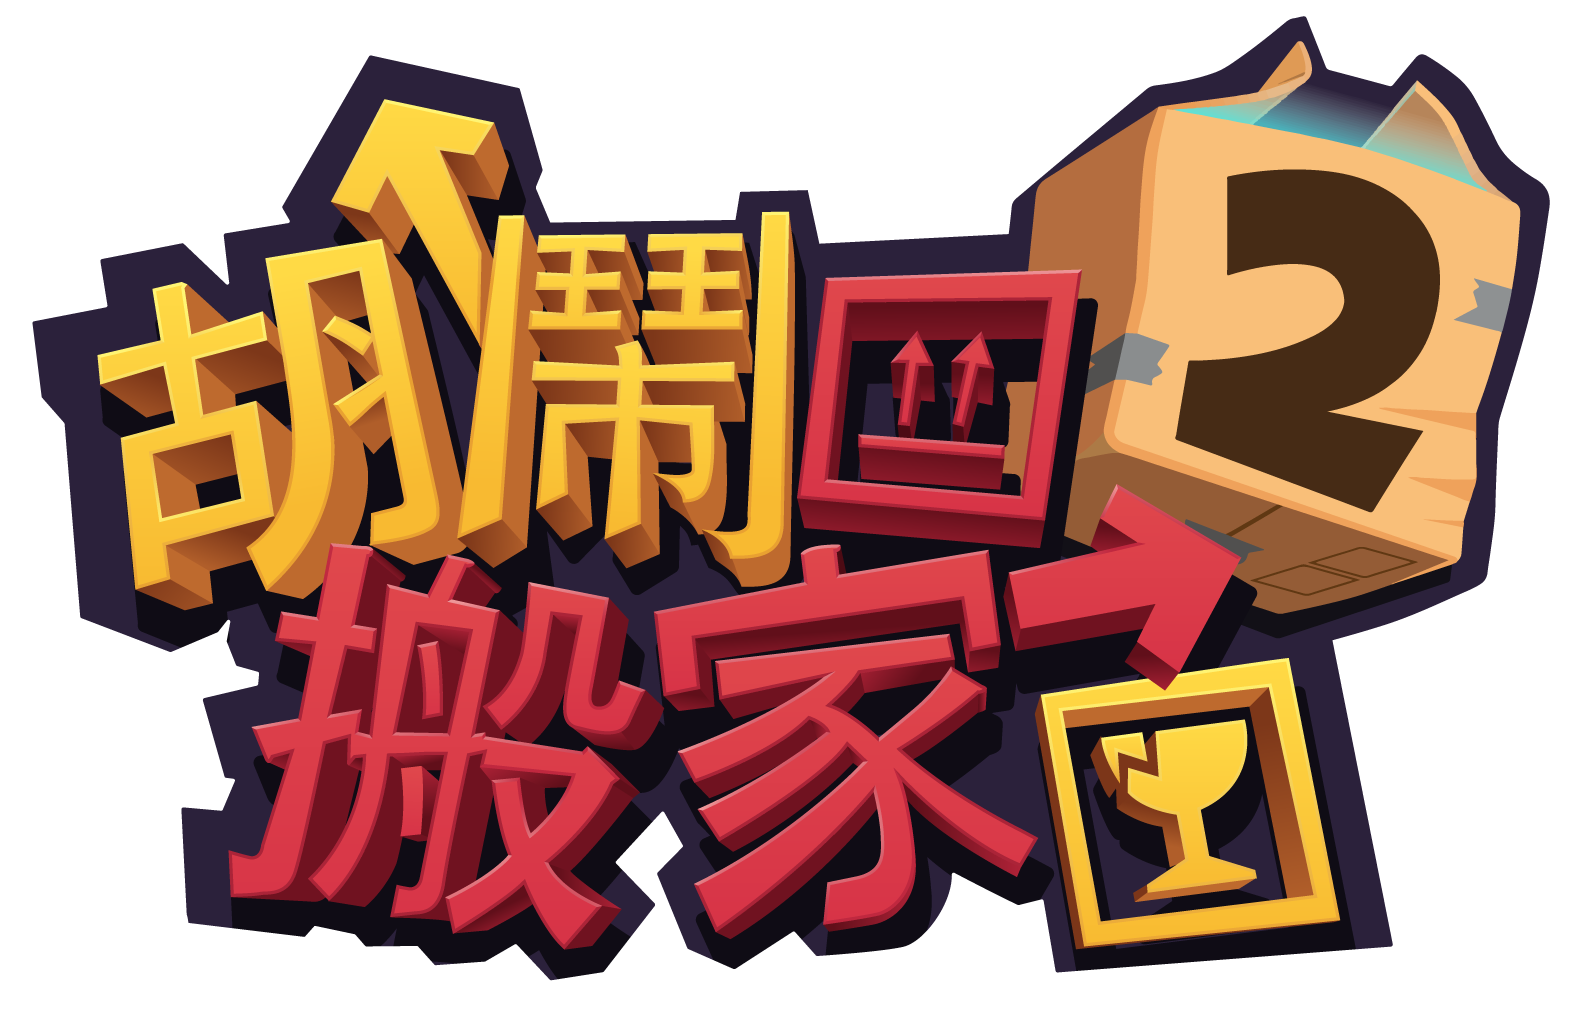 搬家模拟游戏《胡闹搬家 2》亚洲版确定 8/15 上市 立即加入成为 F.A.R.T. 一员